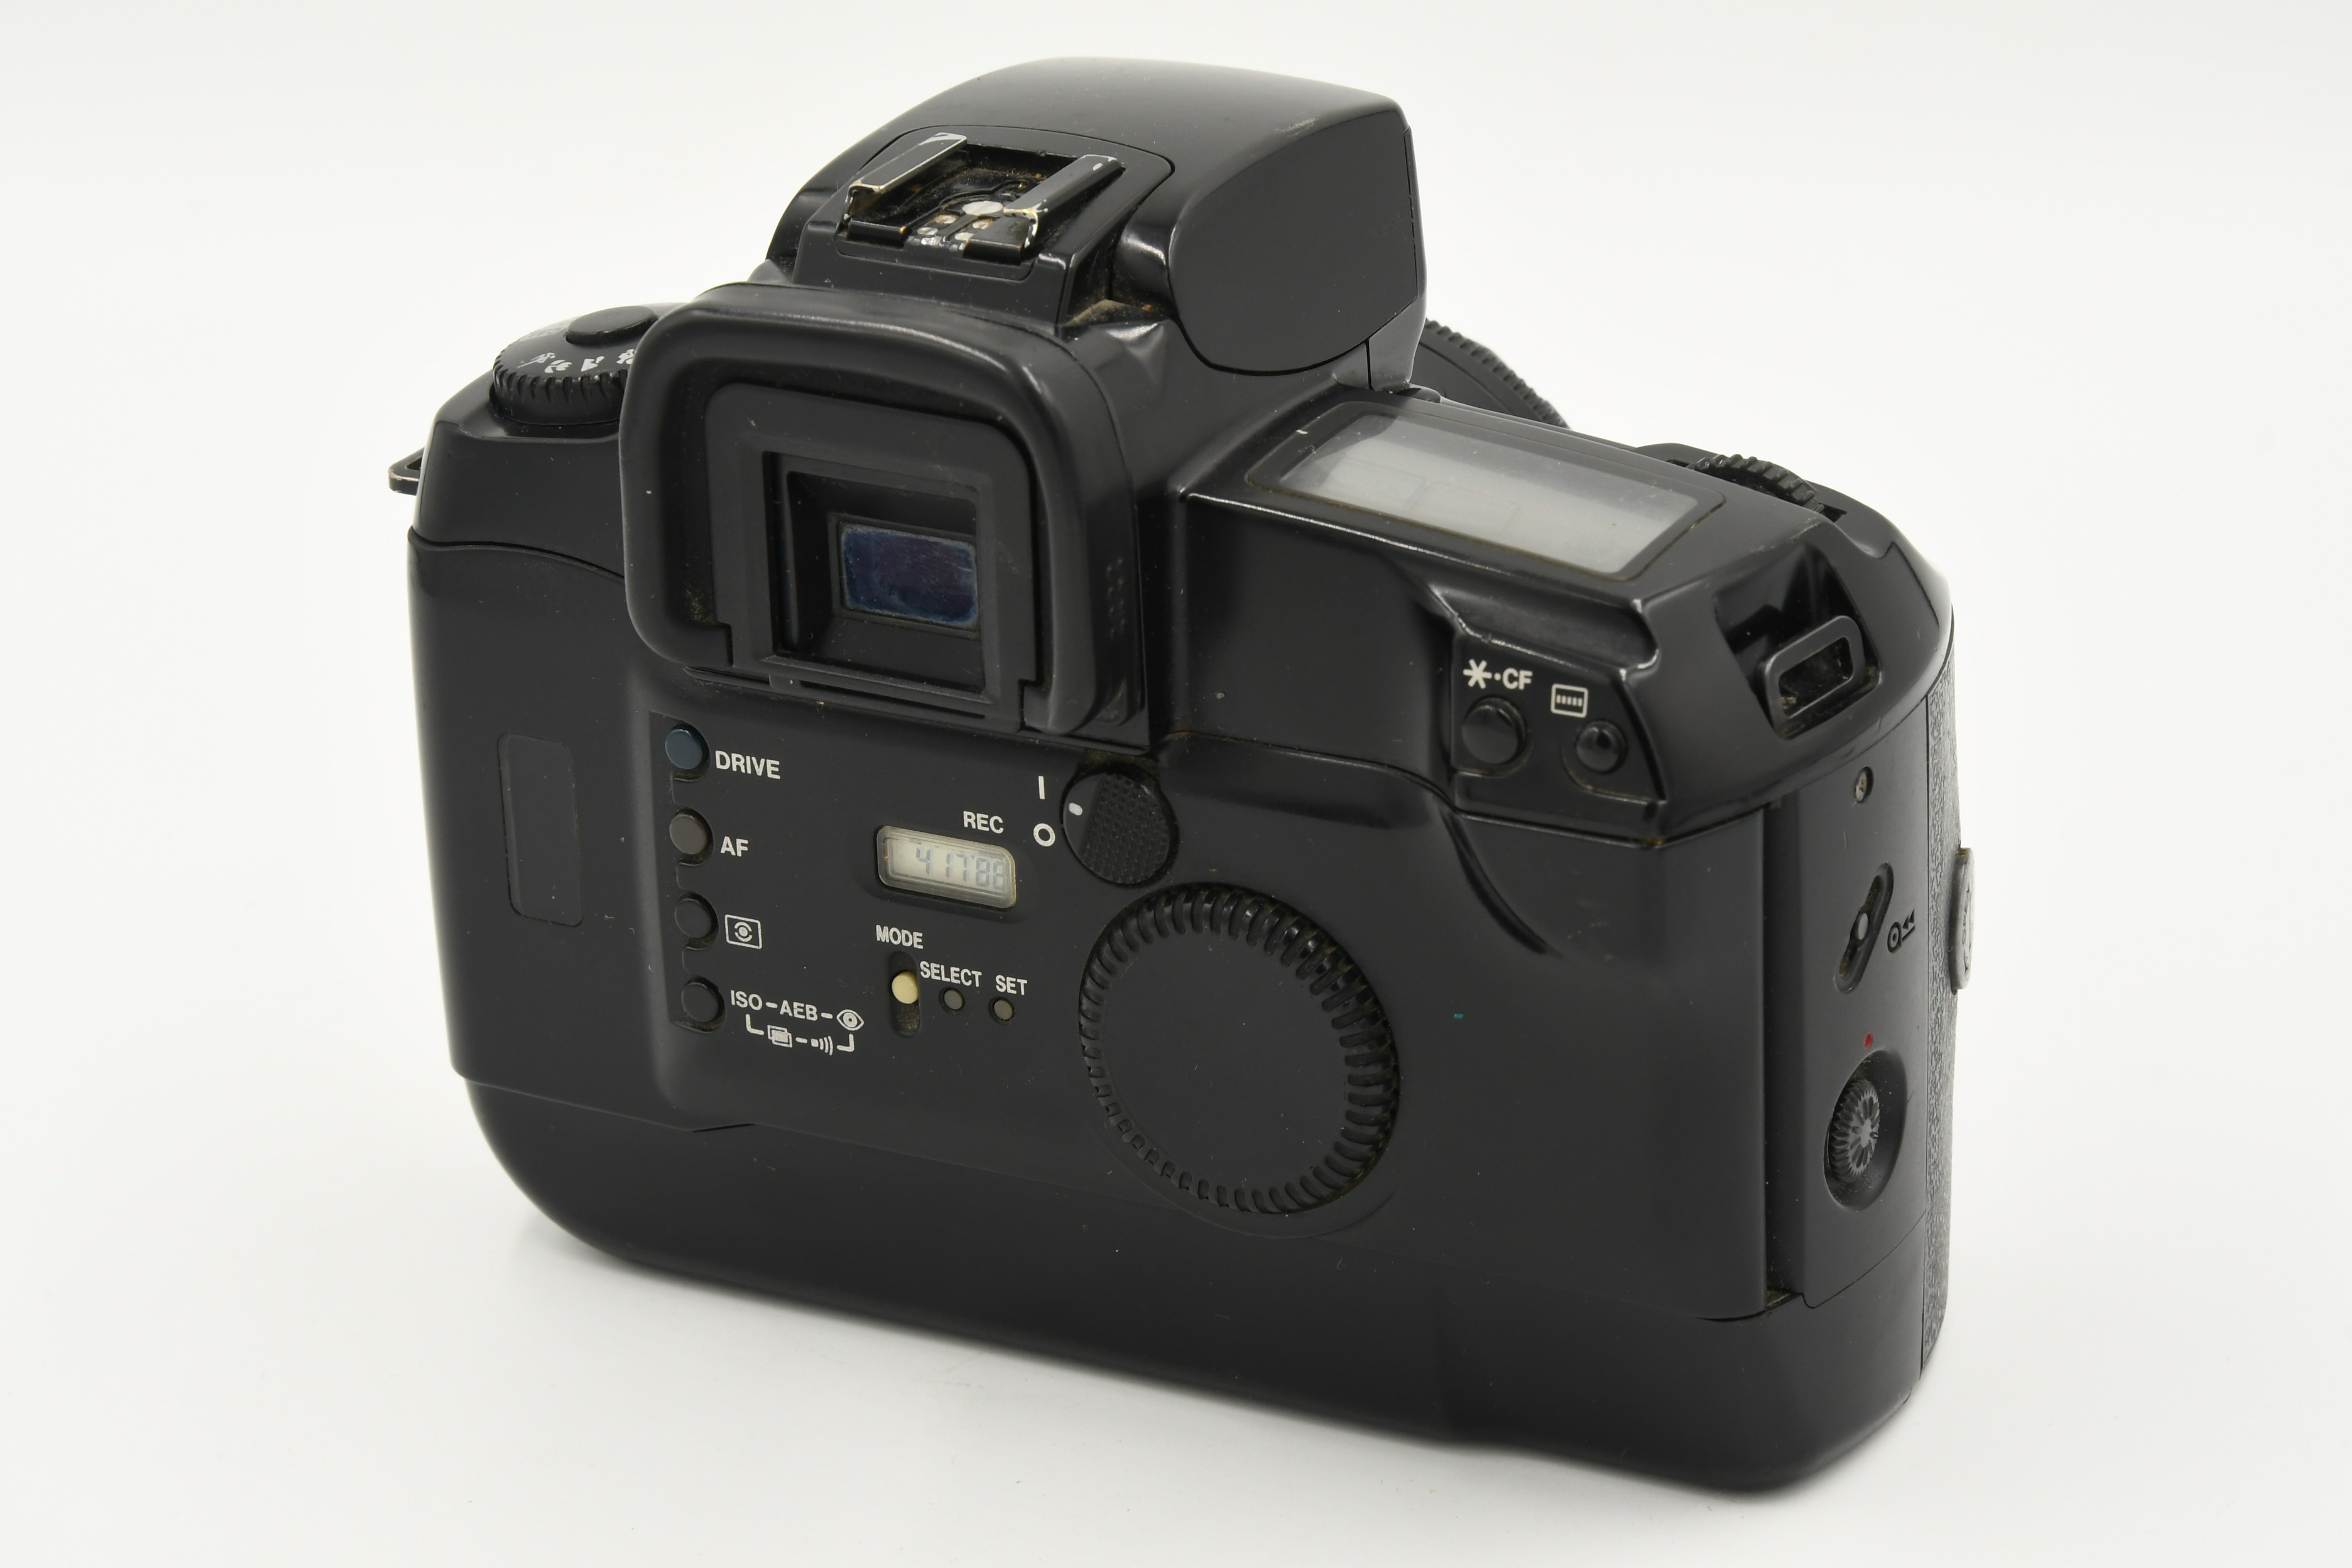 Зеркальный фотоаппарат CANON EOS 5 DQ + 50/1.8 II (состояние 4)